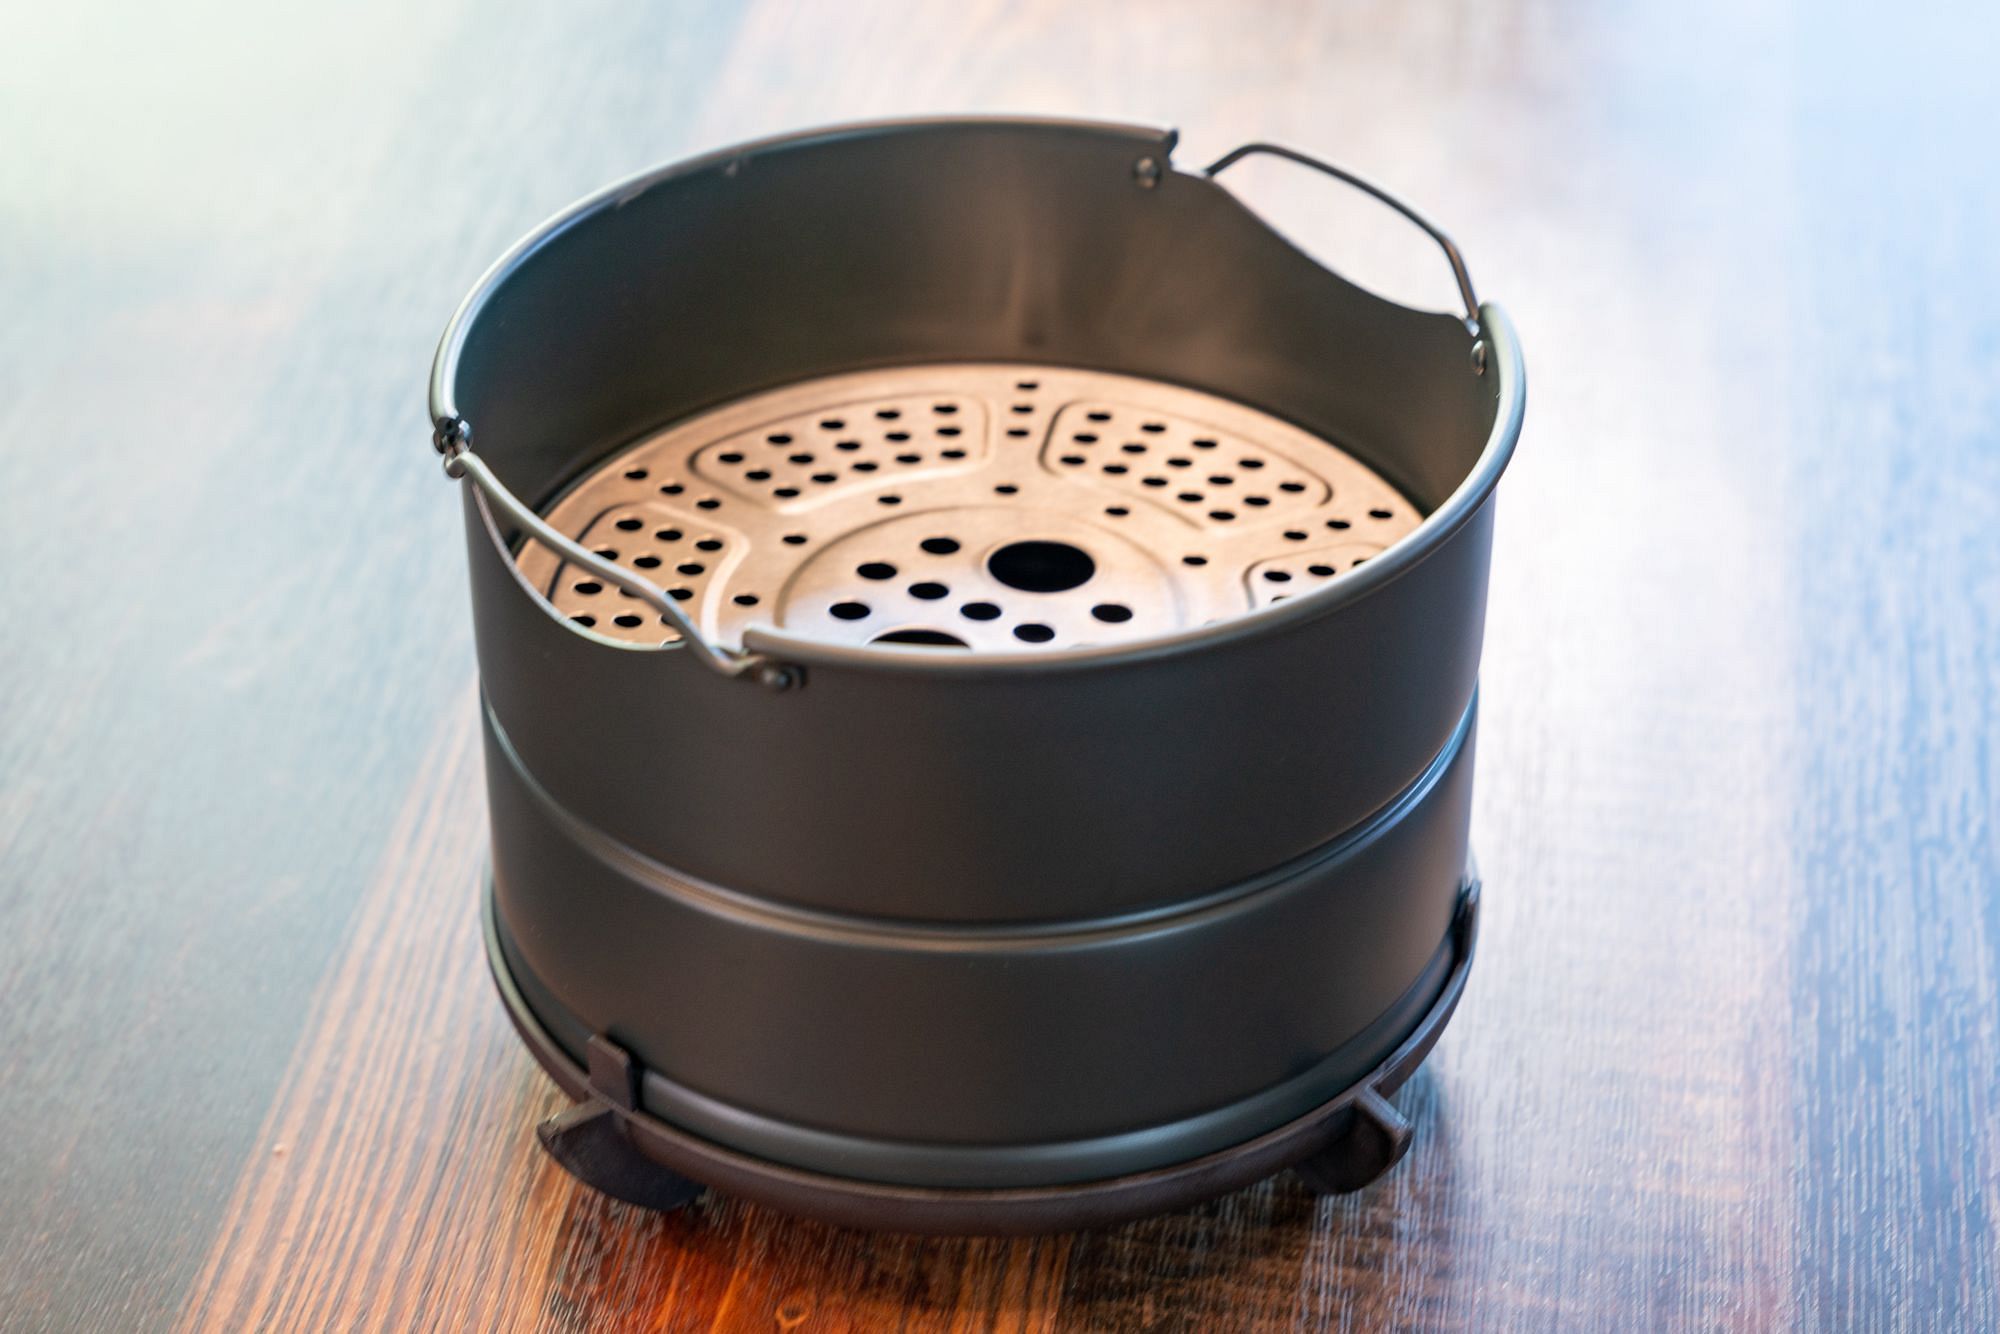 https://www.adventurousway.com/images/i/tvcfm7l02fce/2000w/gear-reviews/instant-pot-air-fryer-lid-review/air-fryer-lid-basket.jpeg